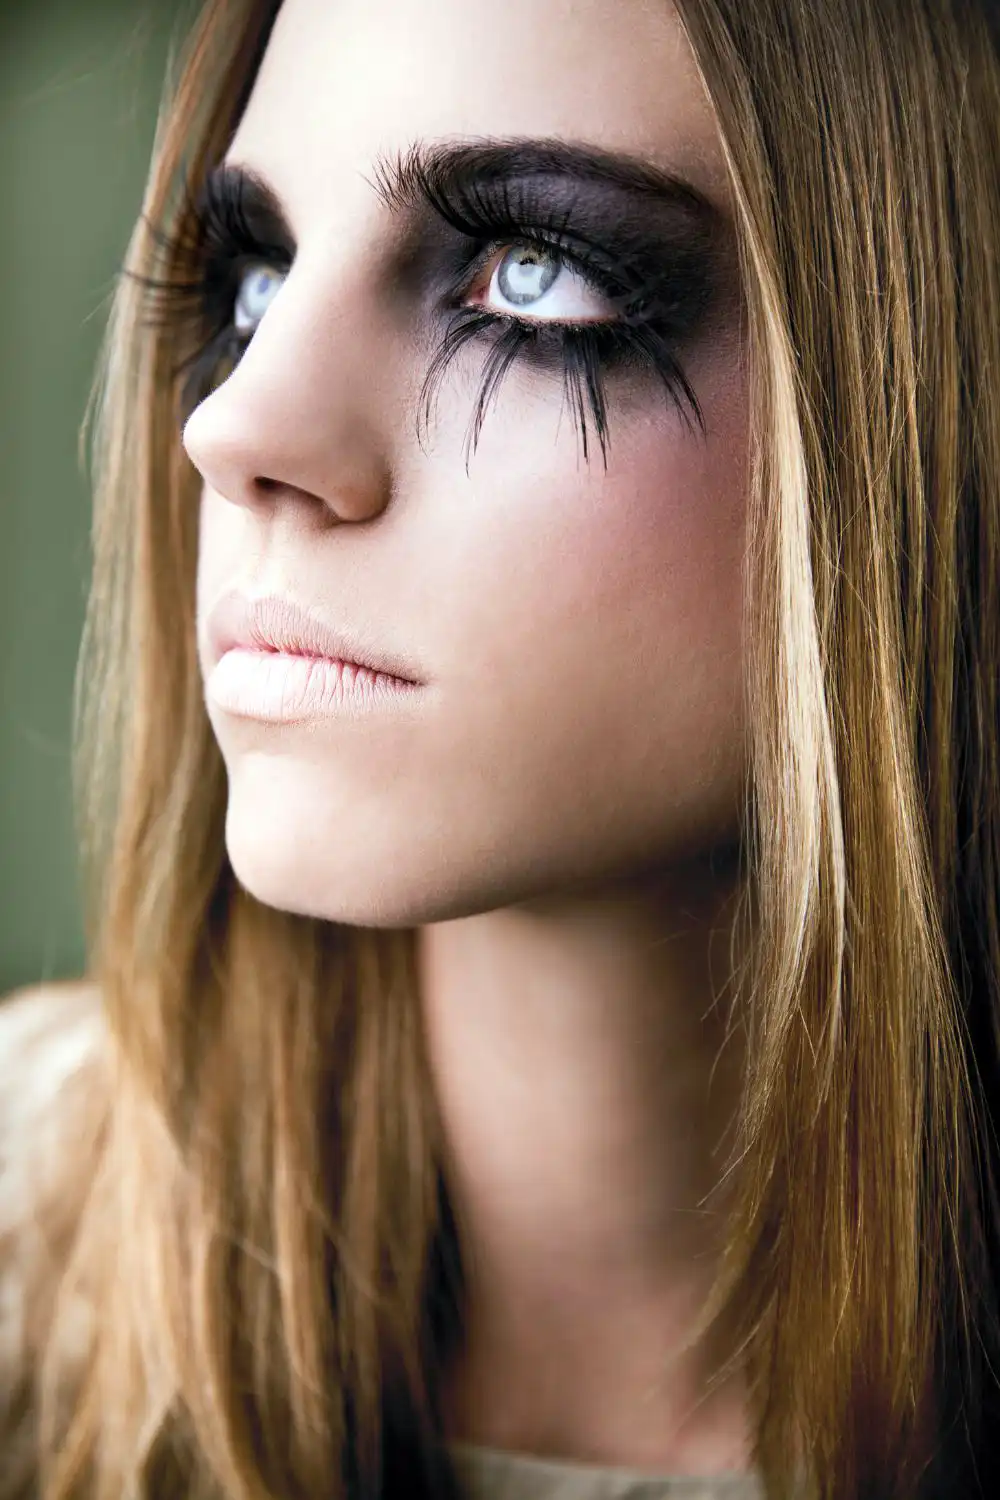 Girl wearing fake eyelashes for cosplay